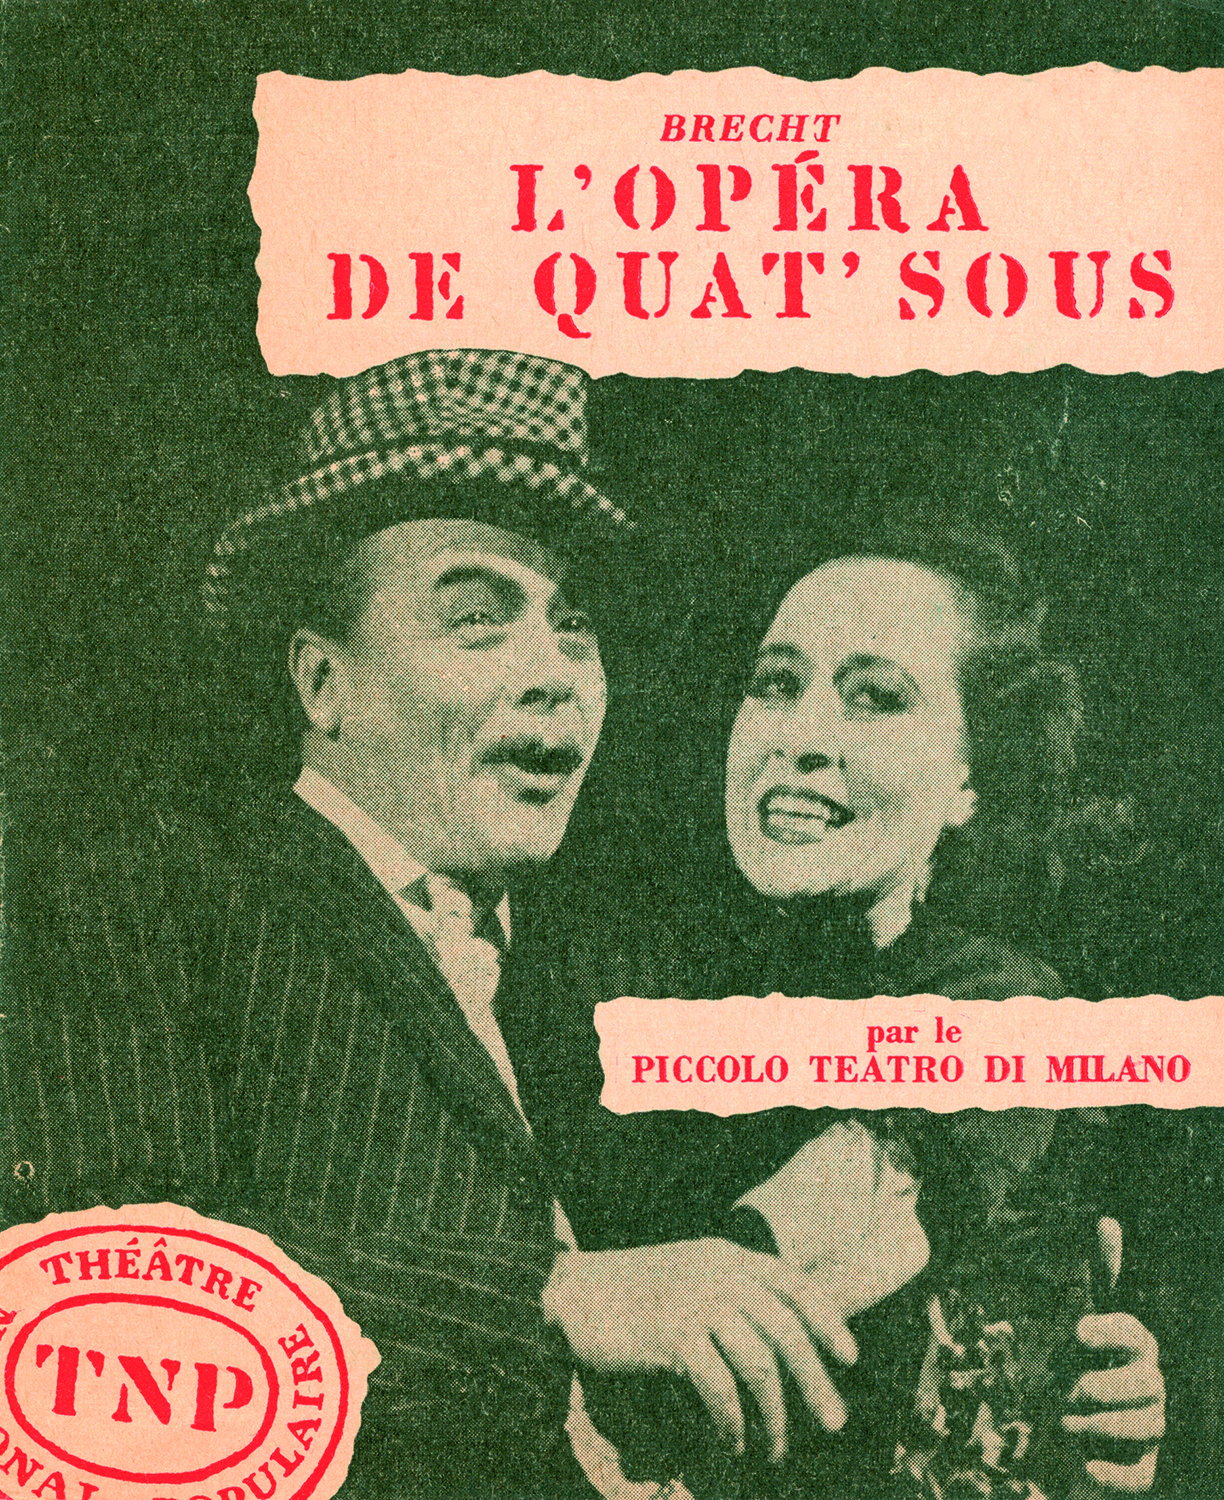 Tino Carraro e Milly sulla copertina del programma di sala parigino - Archivio Piccolo Teatro di Milano 